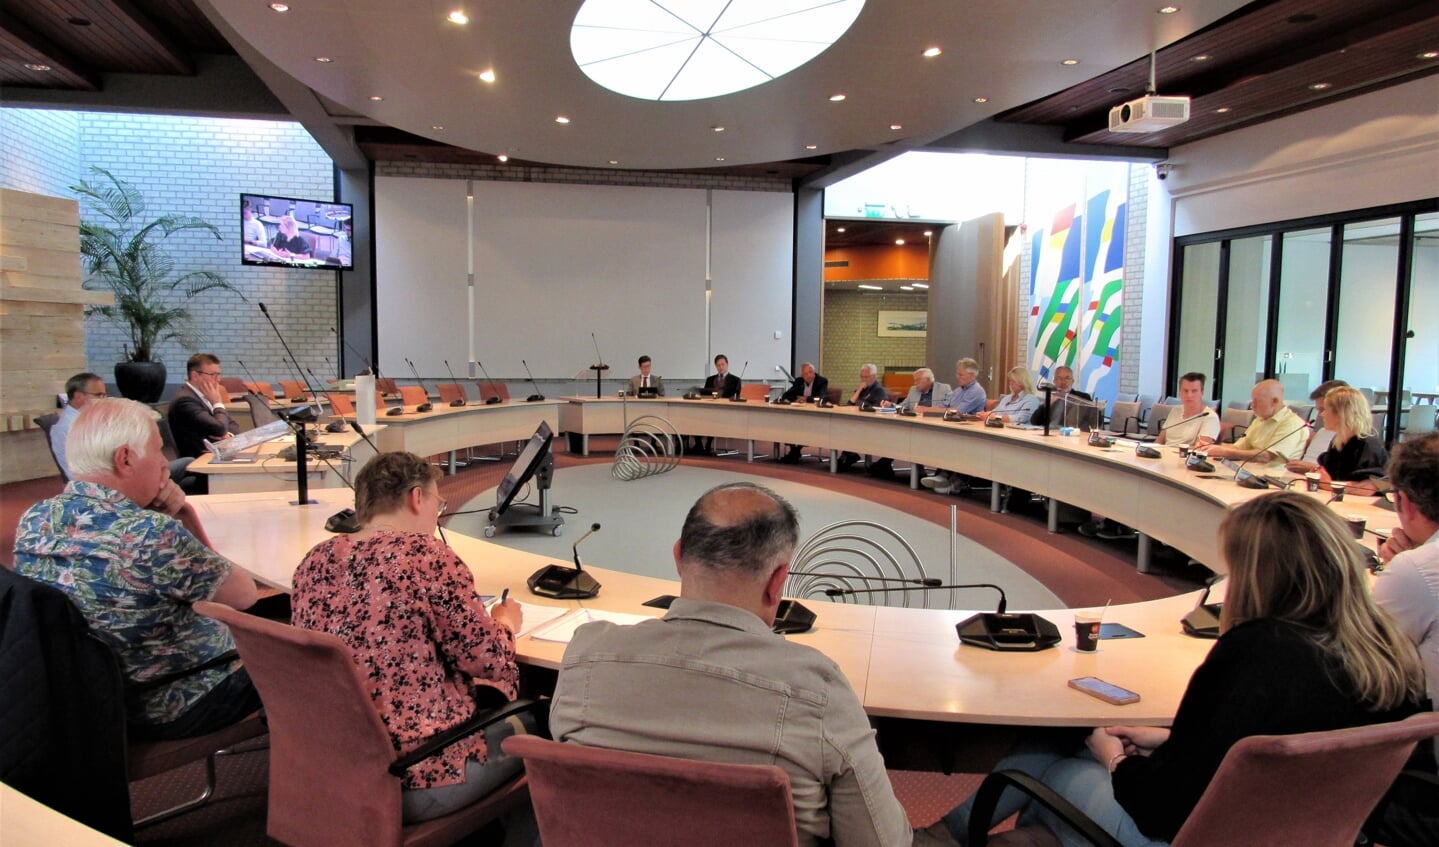 De gemeenteraad kwam vorige week zaterdagochtend bij elkaar om te praten over de mislukte coalitieonderhandelingen.